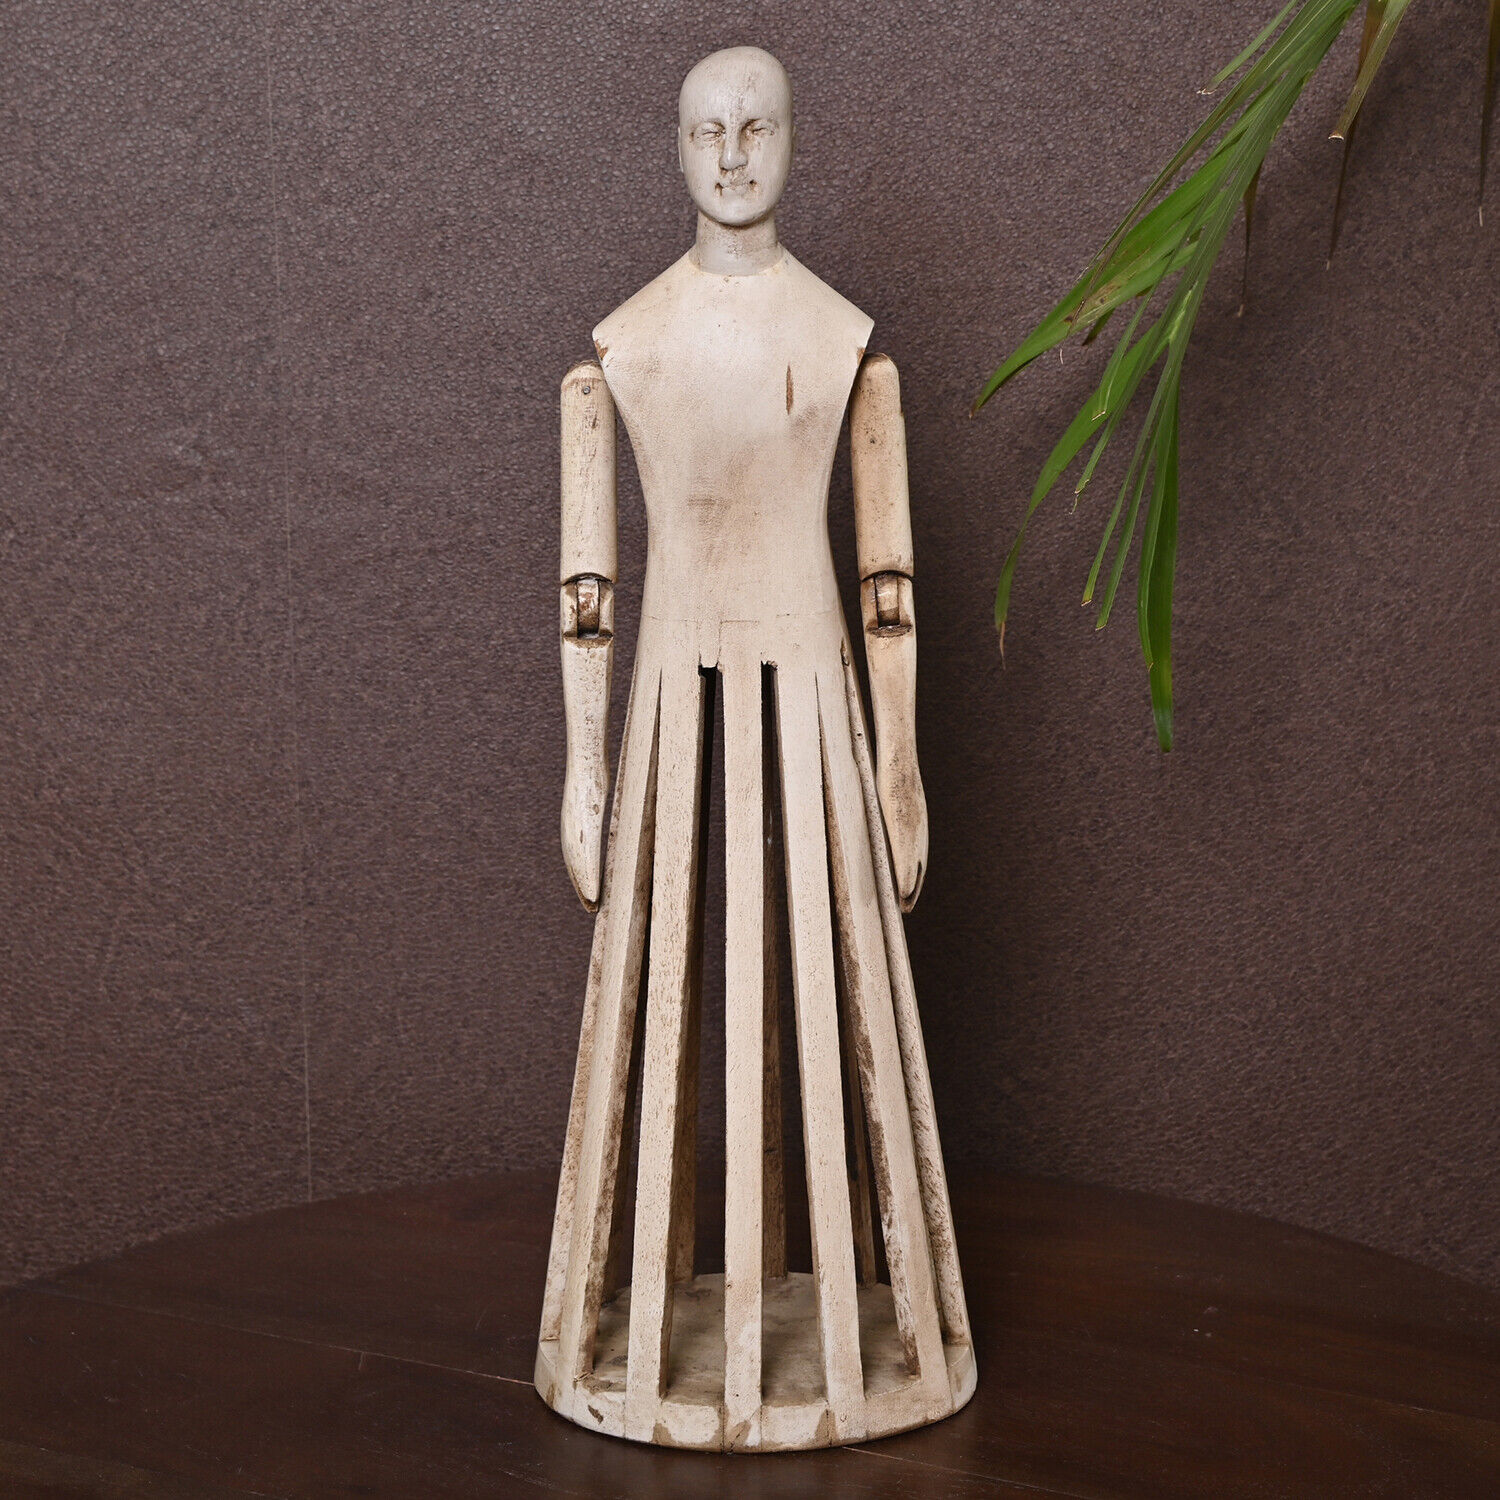 Wooden French figurine decorative wooden mannequin doll Manikin Statue Sculpture